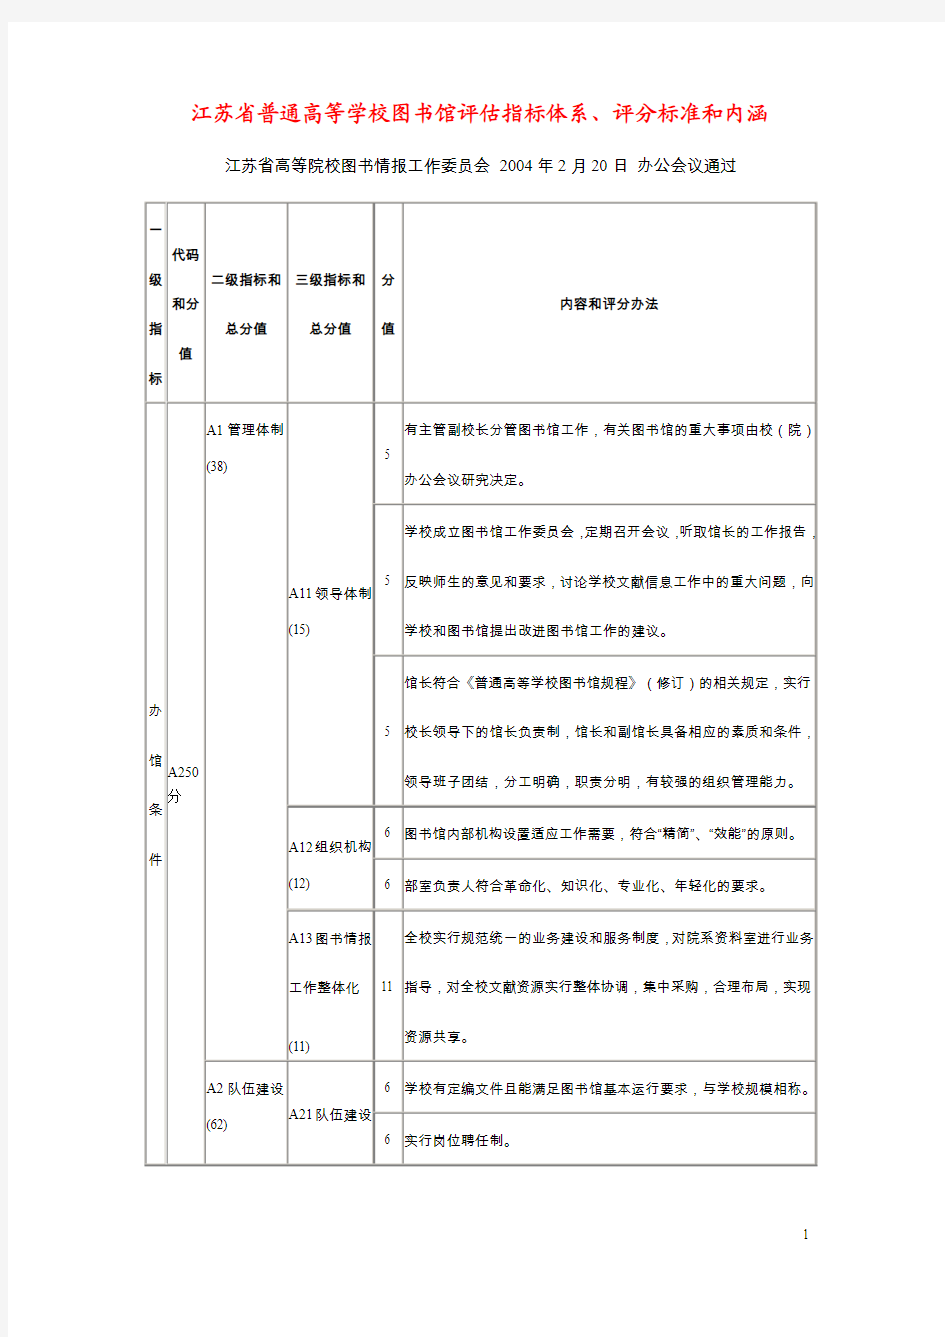 江苏省普通高等学校图书馆评估指标体系,评分标准和内涵